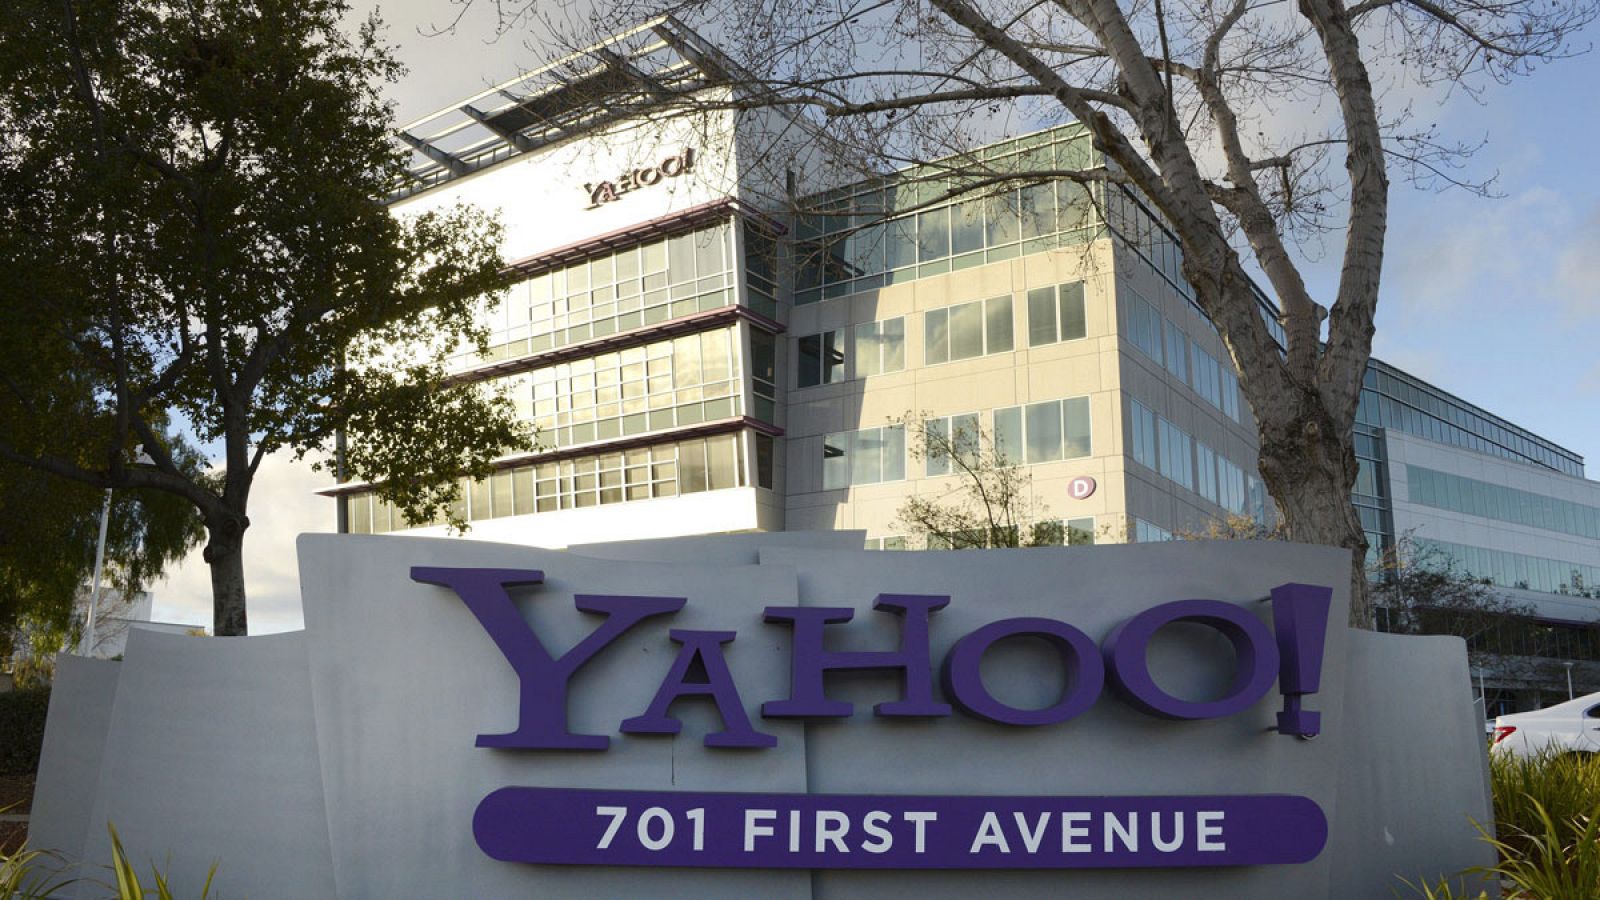 Imagen que muestra la fachada de la sede corporativa de Yahoo! en Sunnyvale, California, el pasado 11 de enero de 2013.